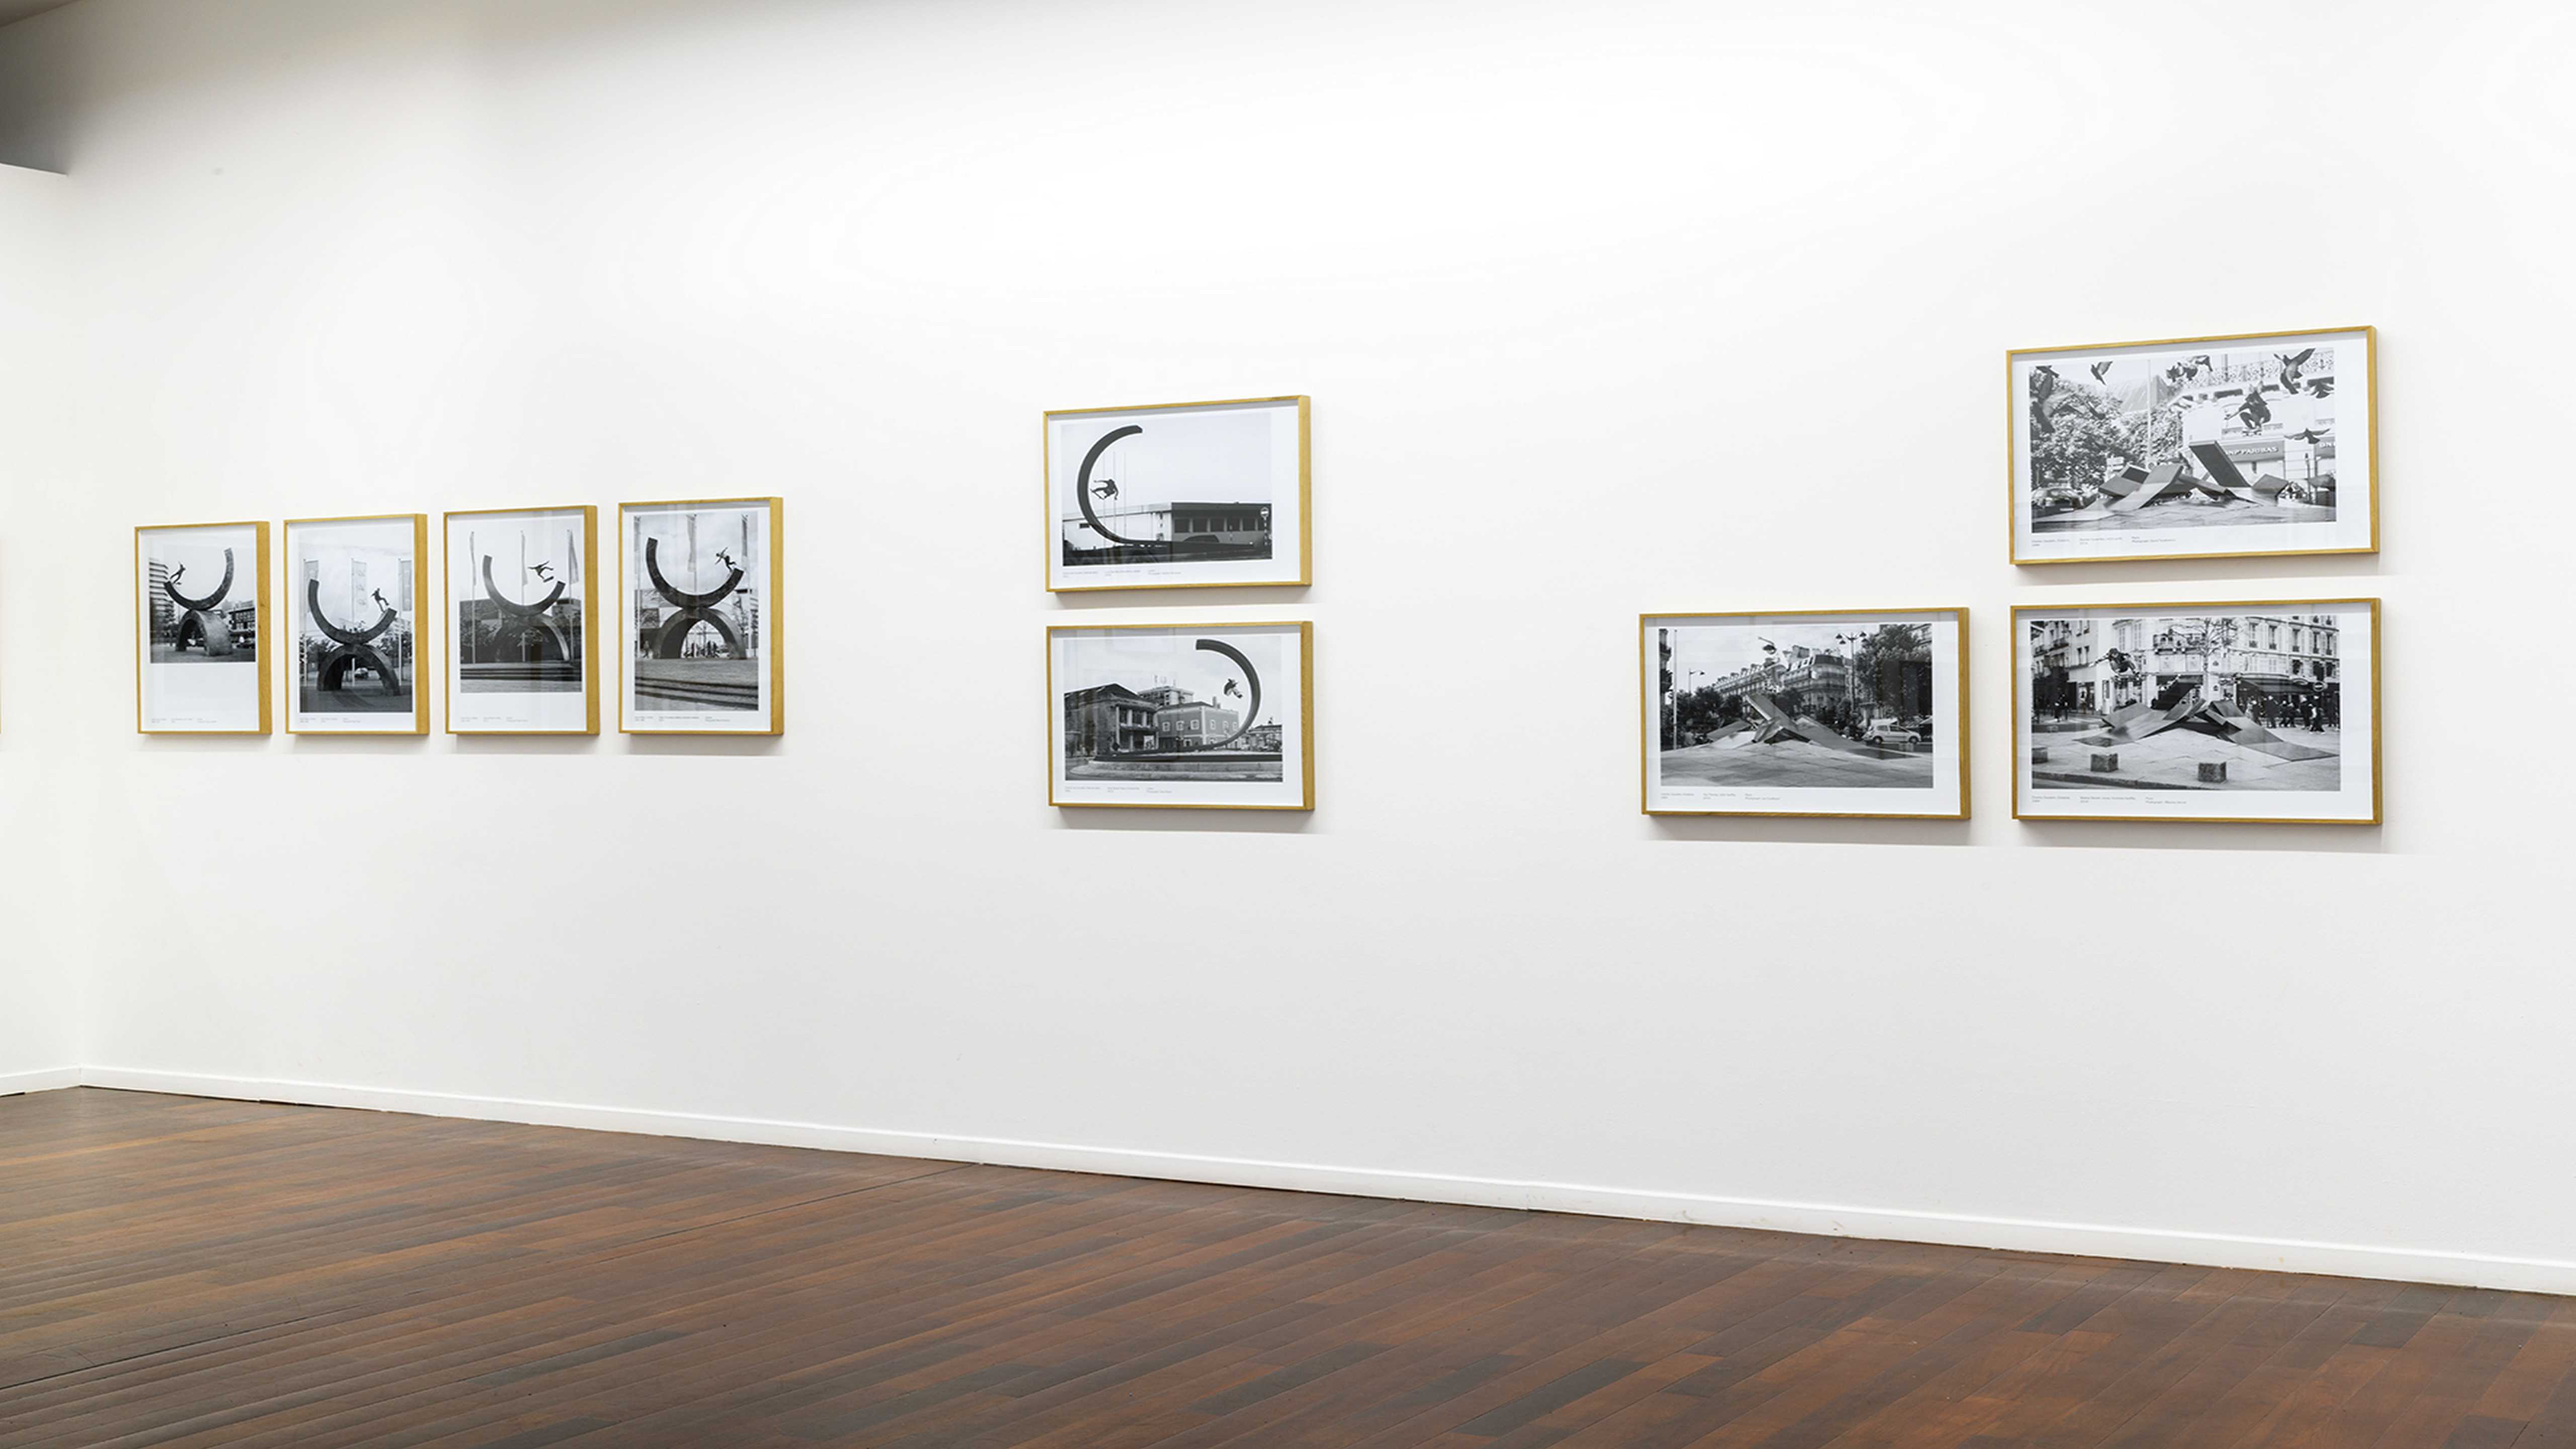 L'artothèque de Pessac "Les Arts au mur" accueille l'exposition "Riding Modern Art" de l'artiste Raphaël Zarka